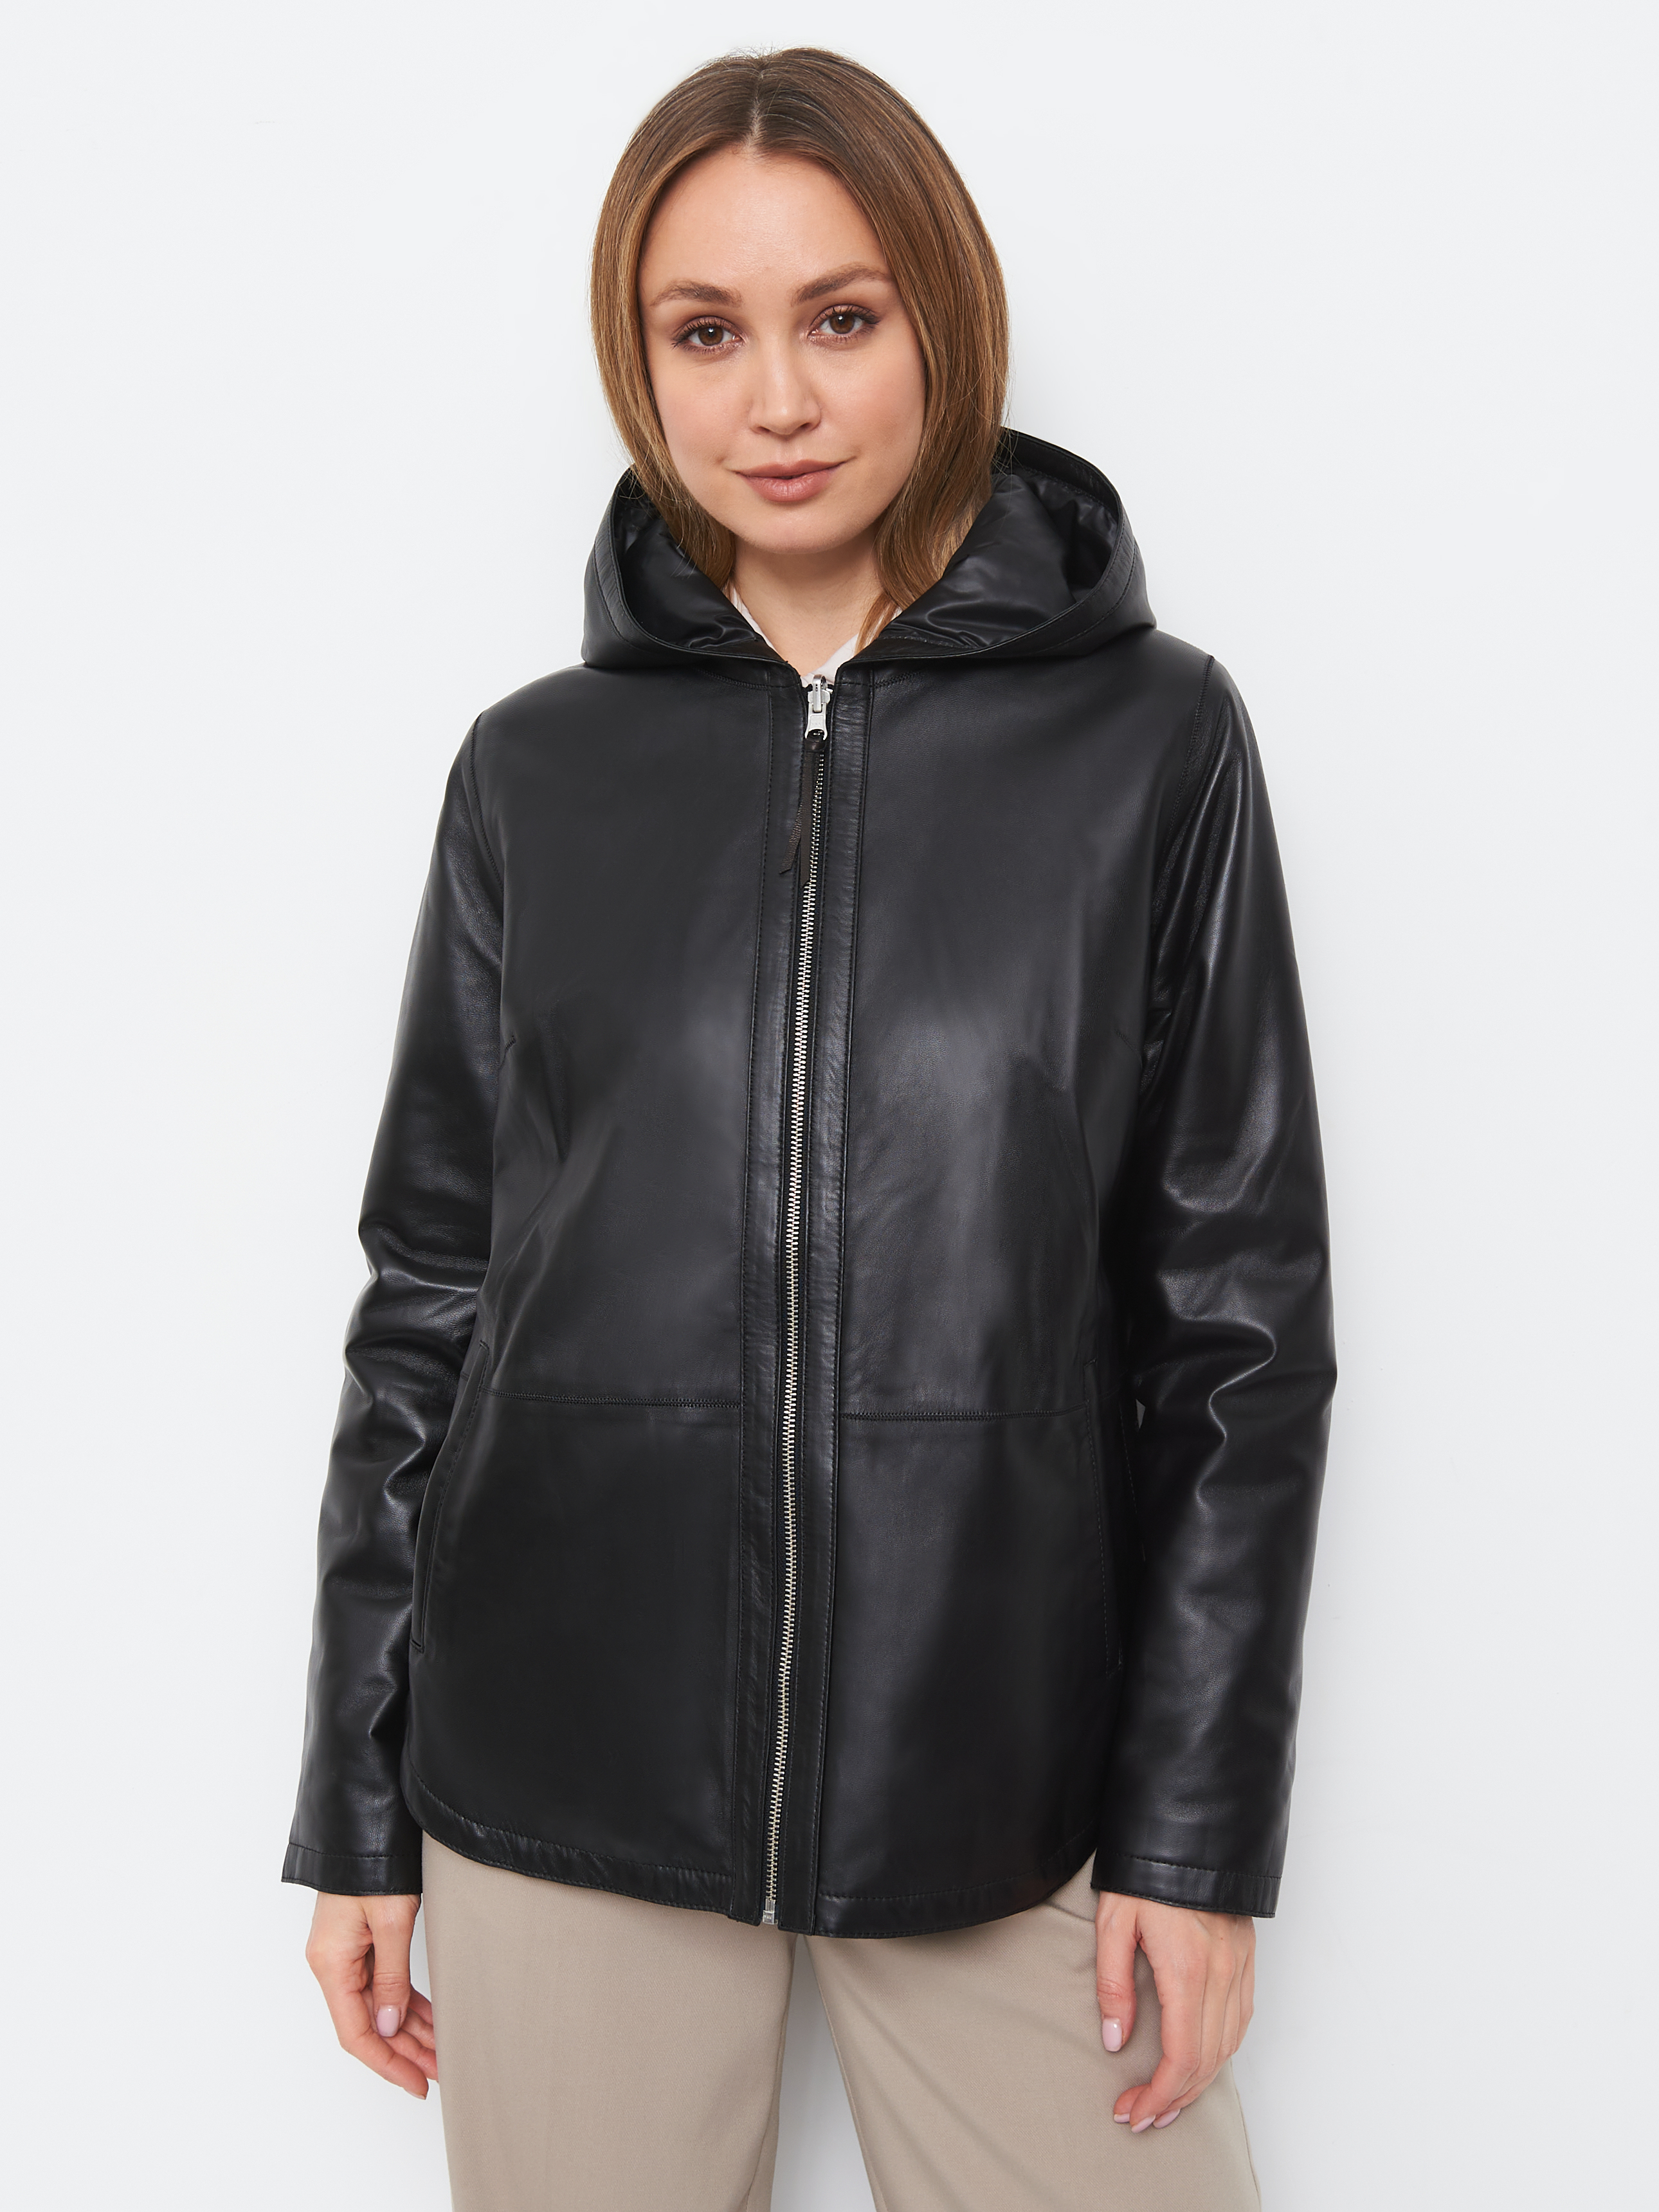 Куртка женская BILGINS KZ-10399 черная 54 RU